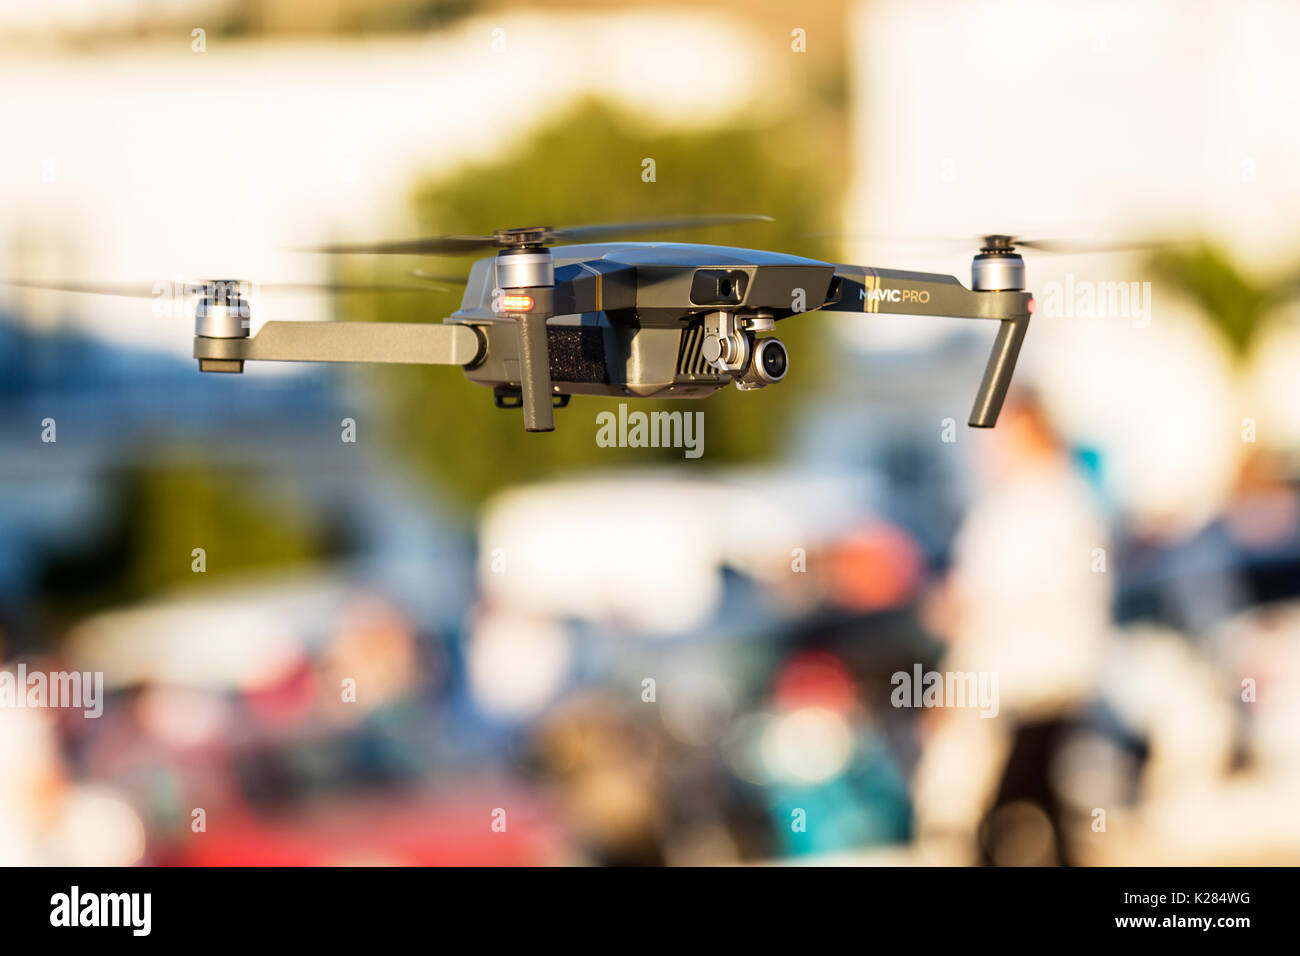 Mavic Pro quadcopter drone volare sopra le persone. Foto Stock